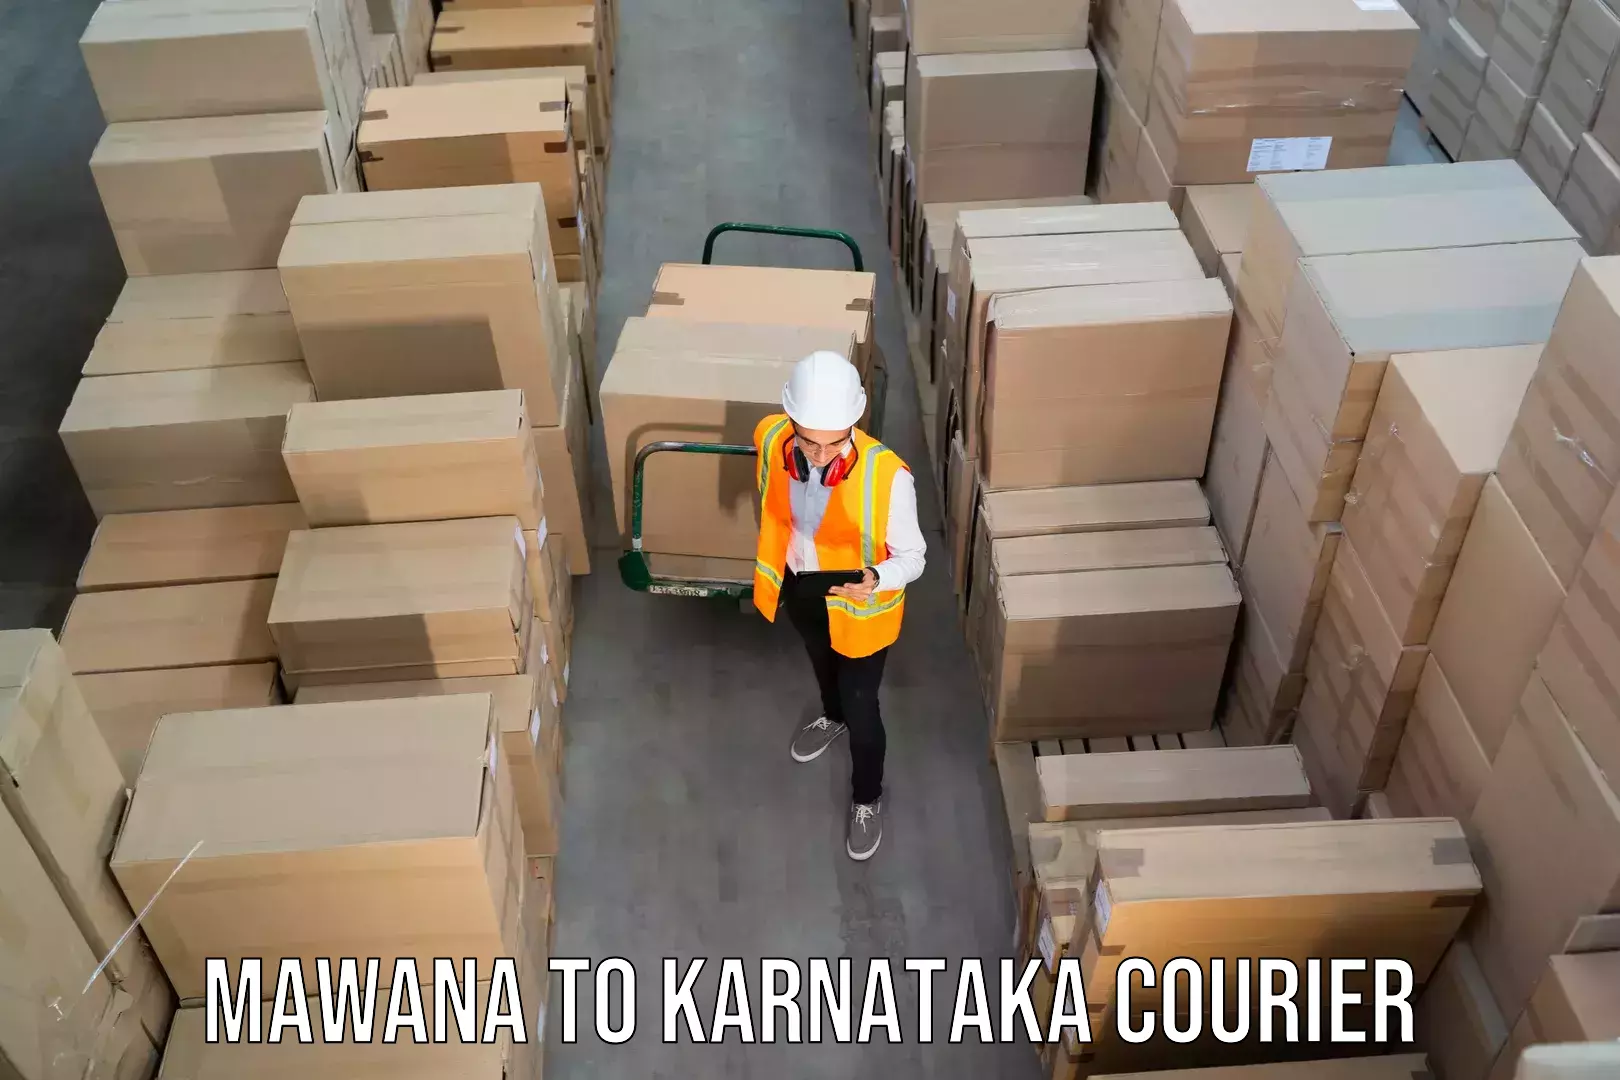 24/7 shipping services in Mawana to Karwar